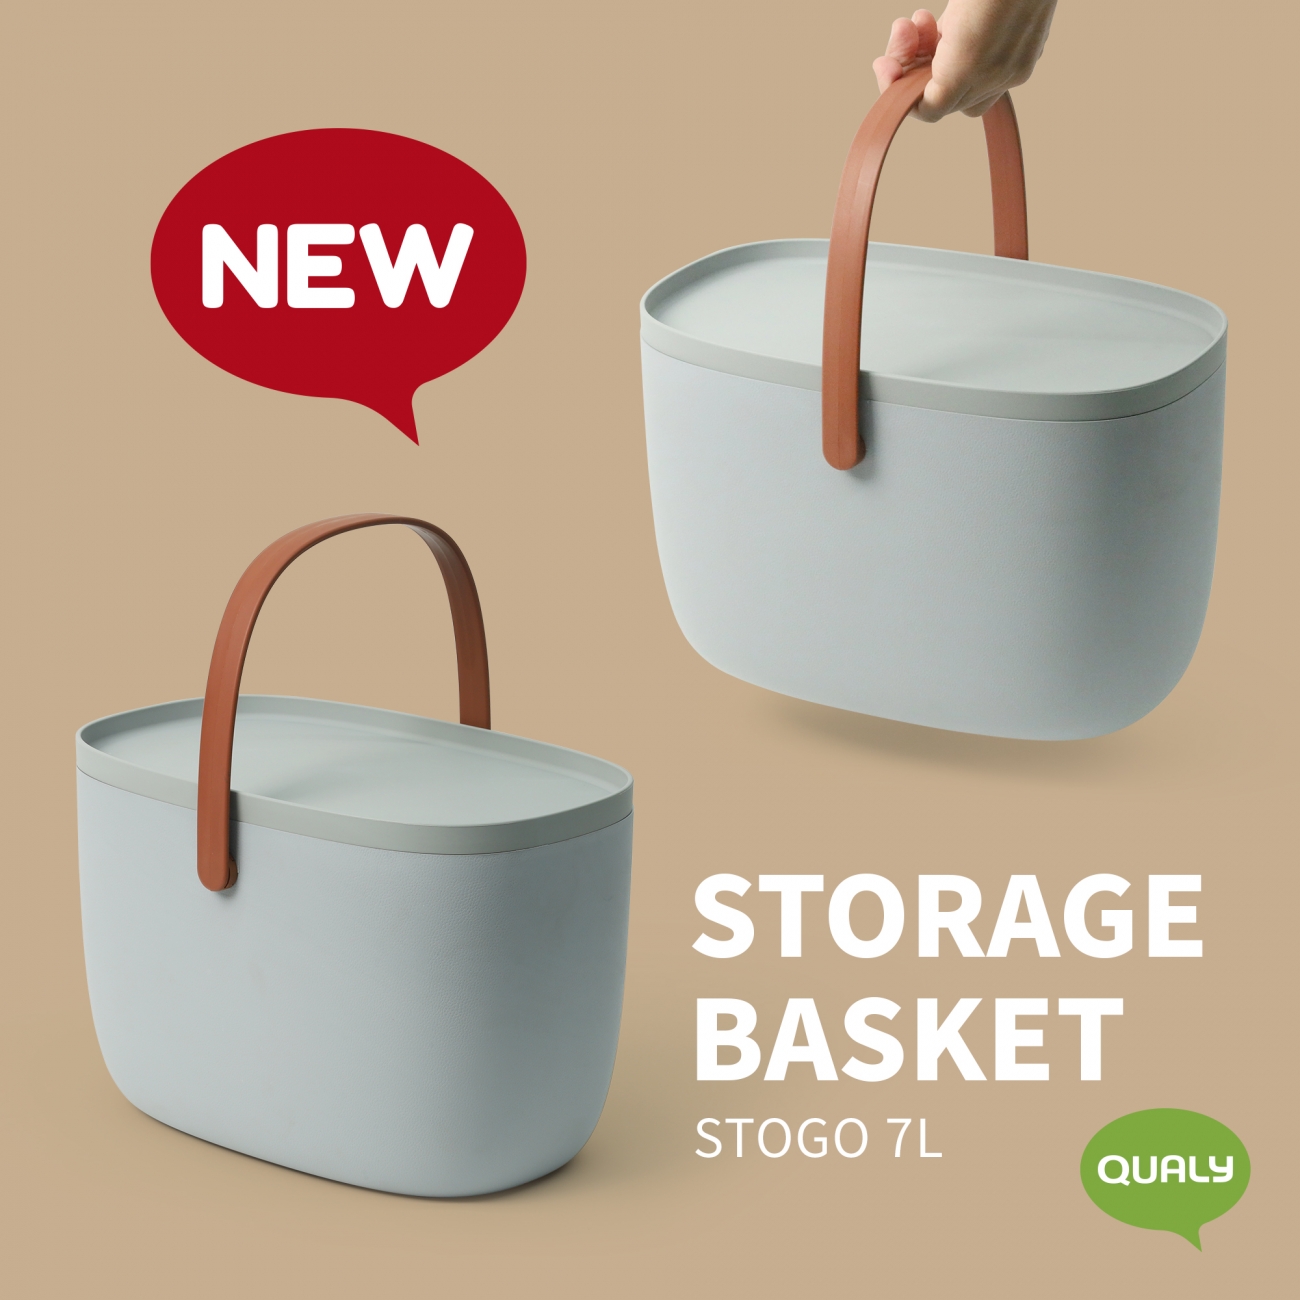 STOGO 7L (Storage Basket)